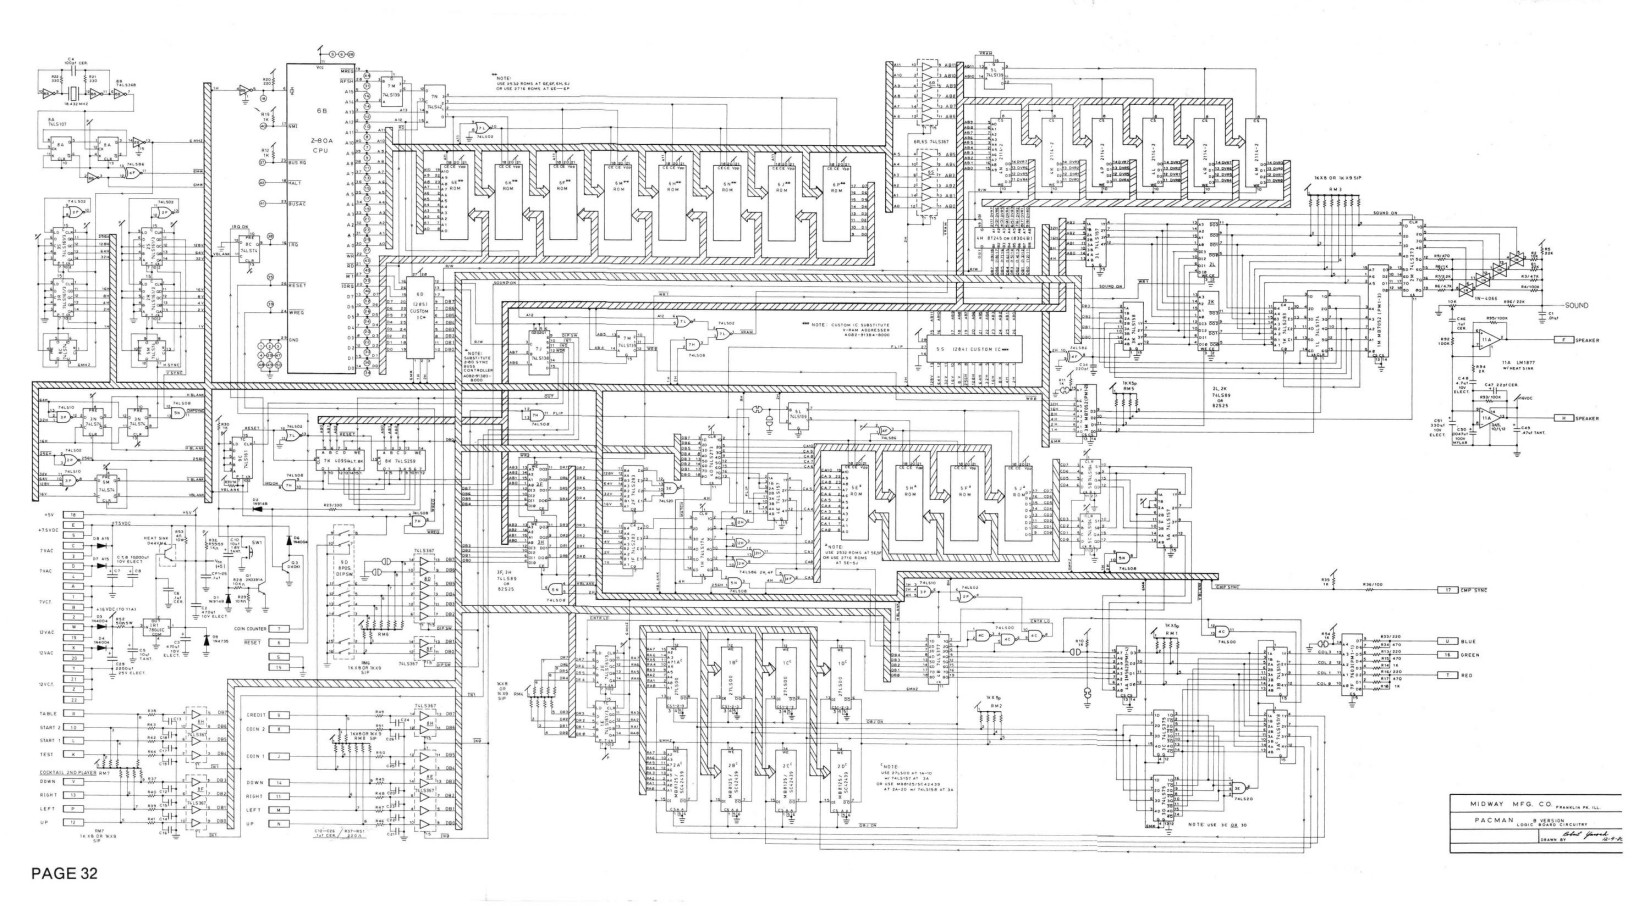 pacman logic board b schematics [ALTERNATE]